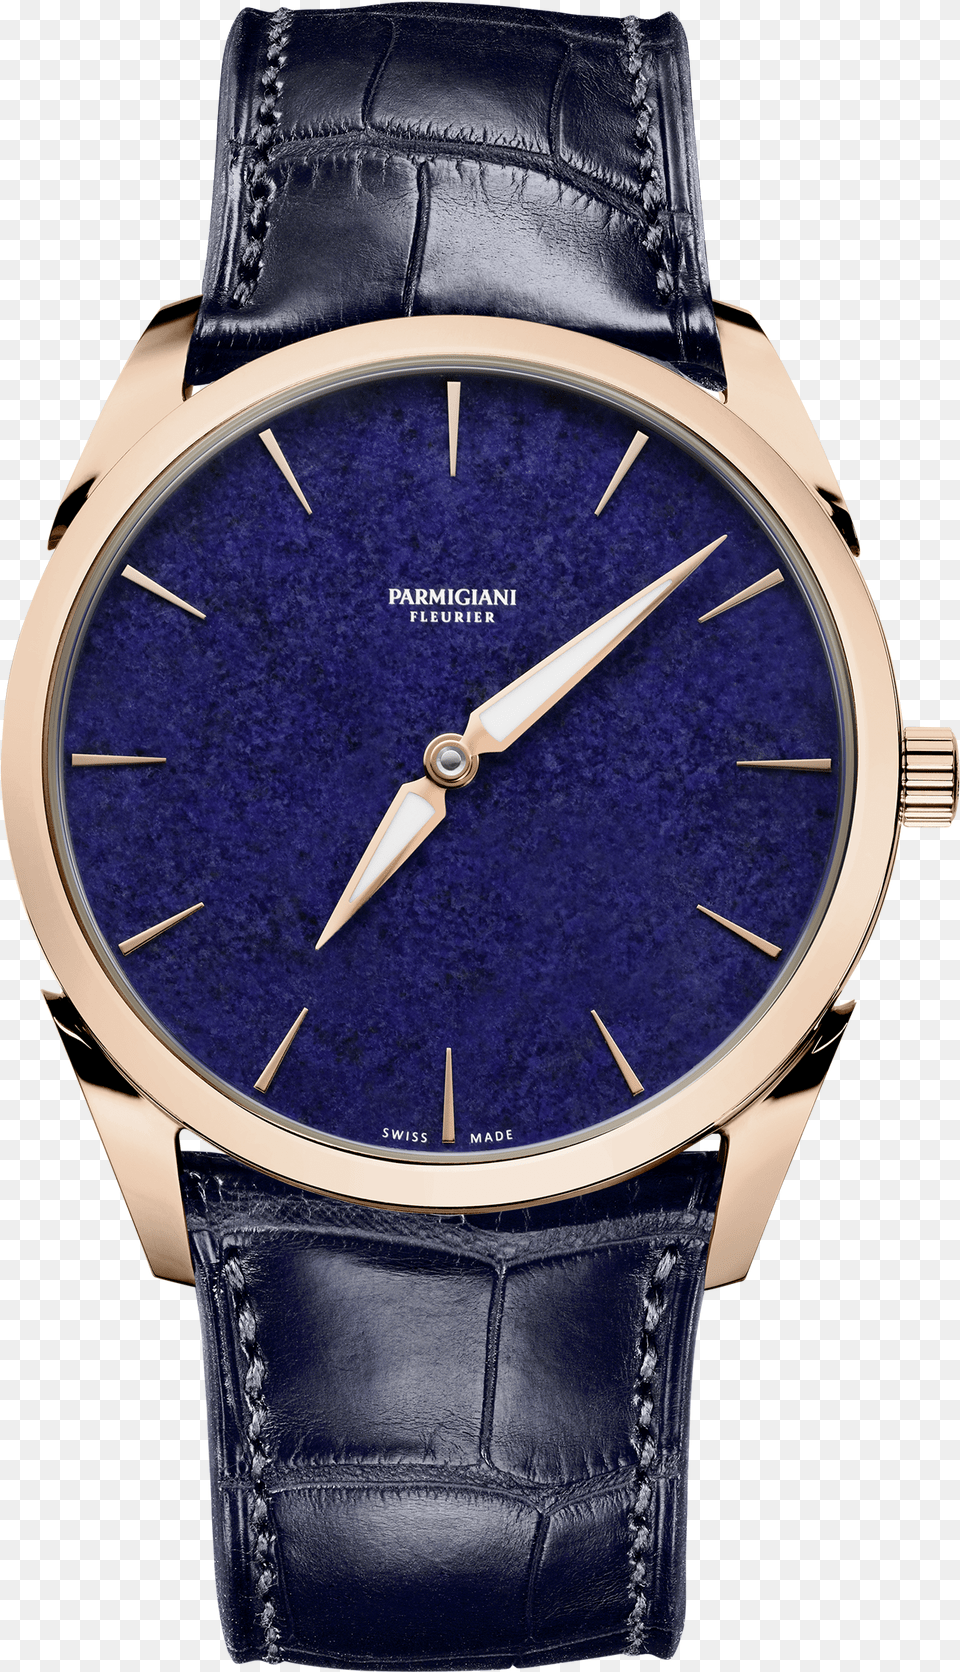 Select Your Language Parmigiani Tonda Meteorite Blue, Arm, Body Part, Person, Wristwatch Png